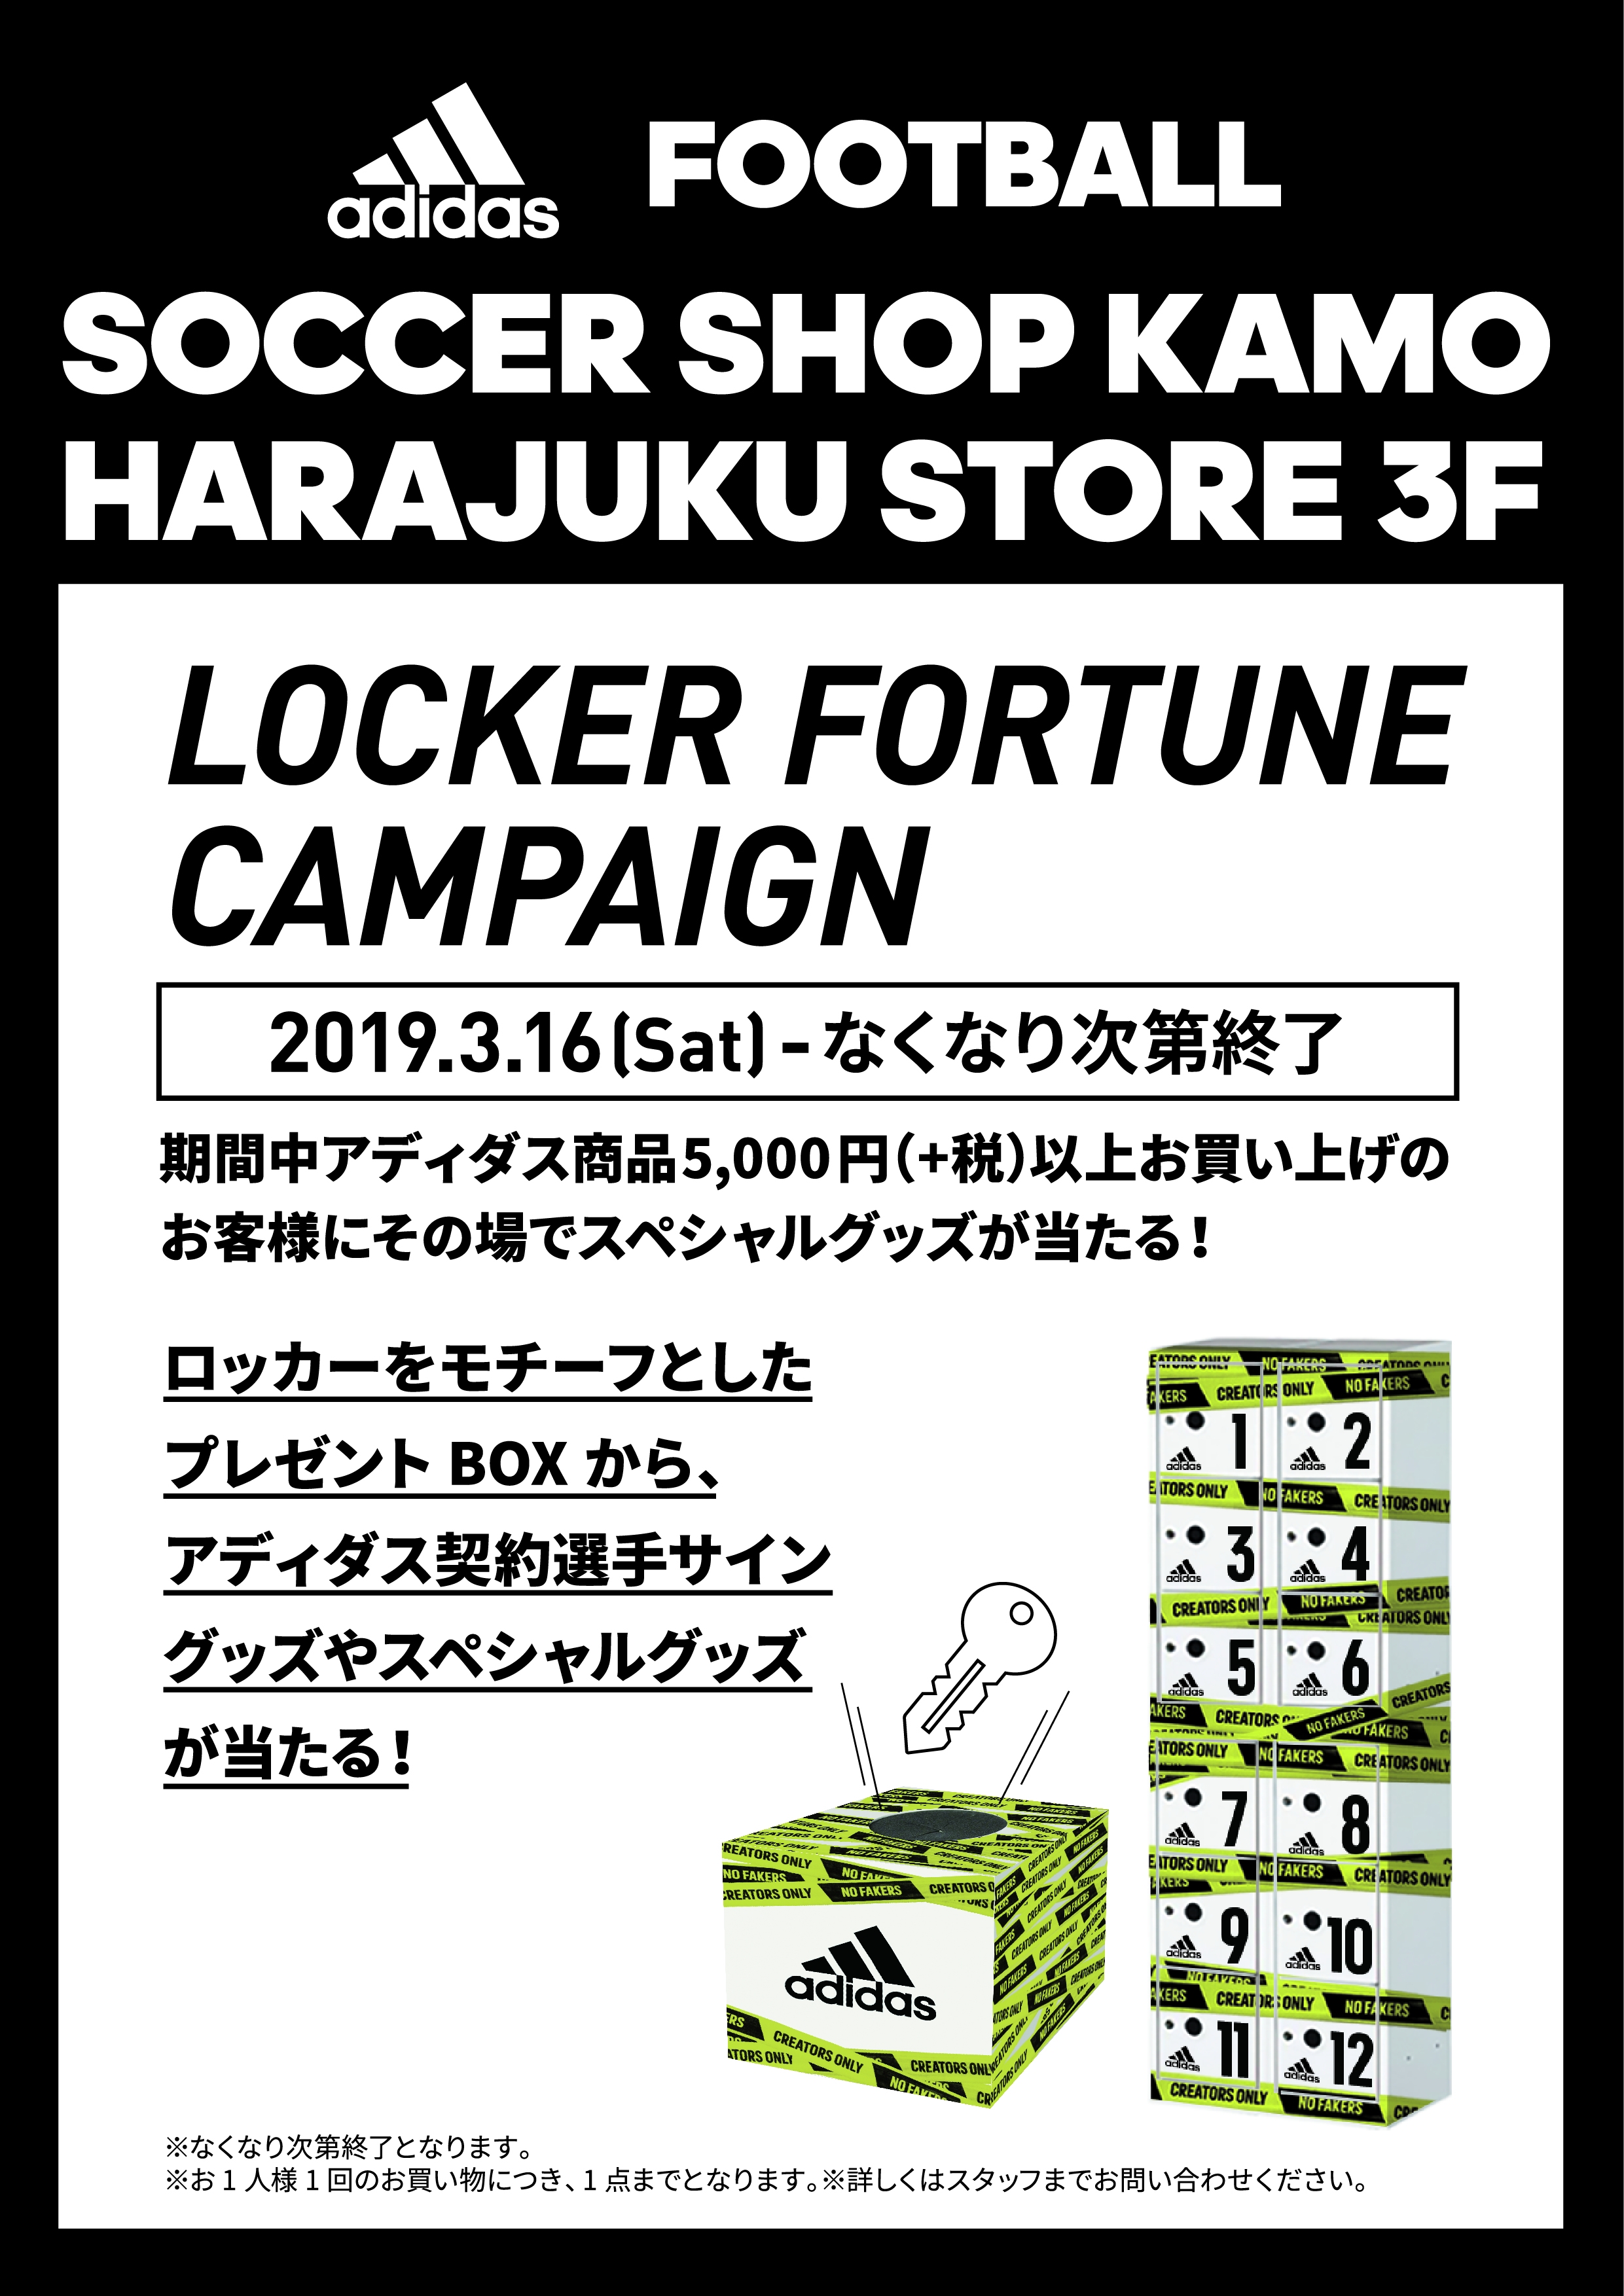 アディダスフットボールの旗艦店サッカーショップkamo原宿店3fがリニューアル 限定モデルを販売 サッカーキング